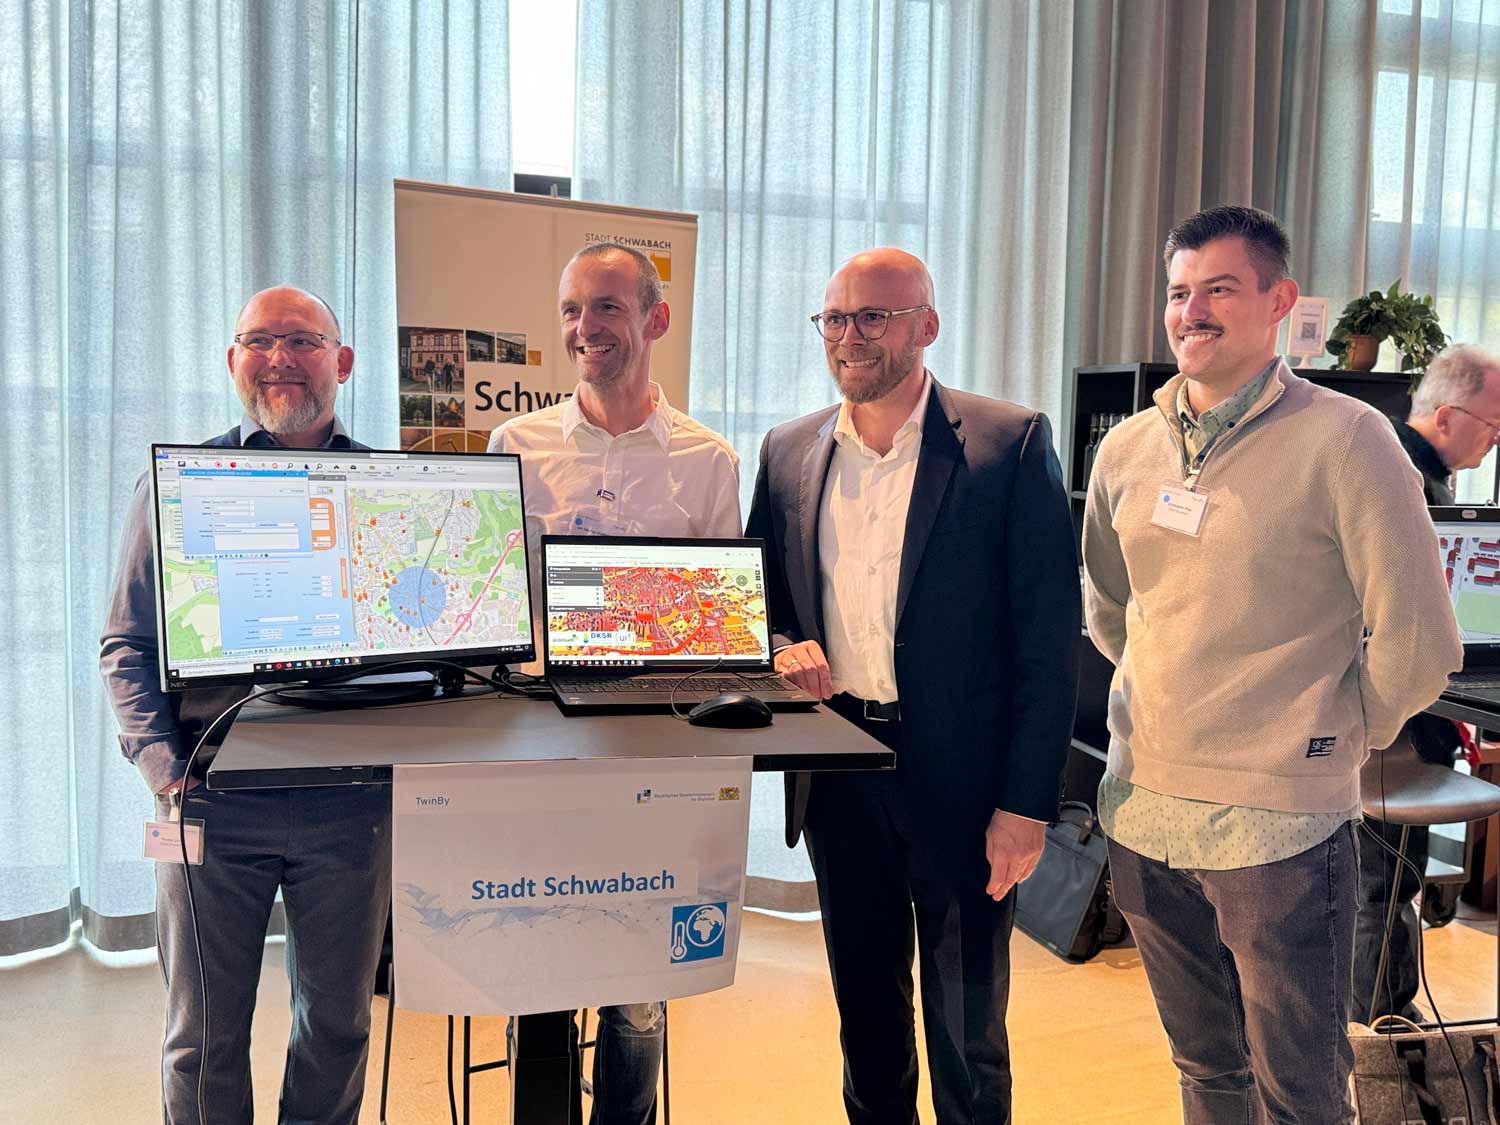 Vier Männer stehen hinter zwei Monitoren auf einem Flatscreen und einem Laptop auf denen Karten von der Stadt Schwabach zu sehen sind.